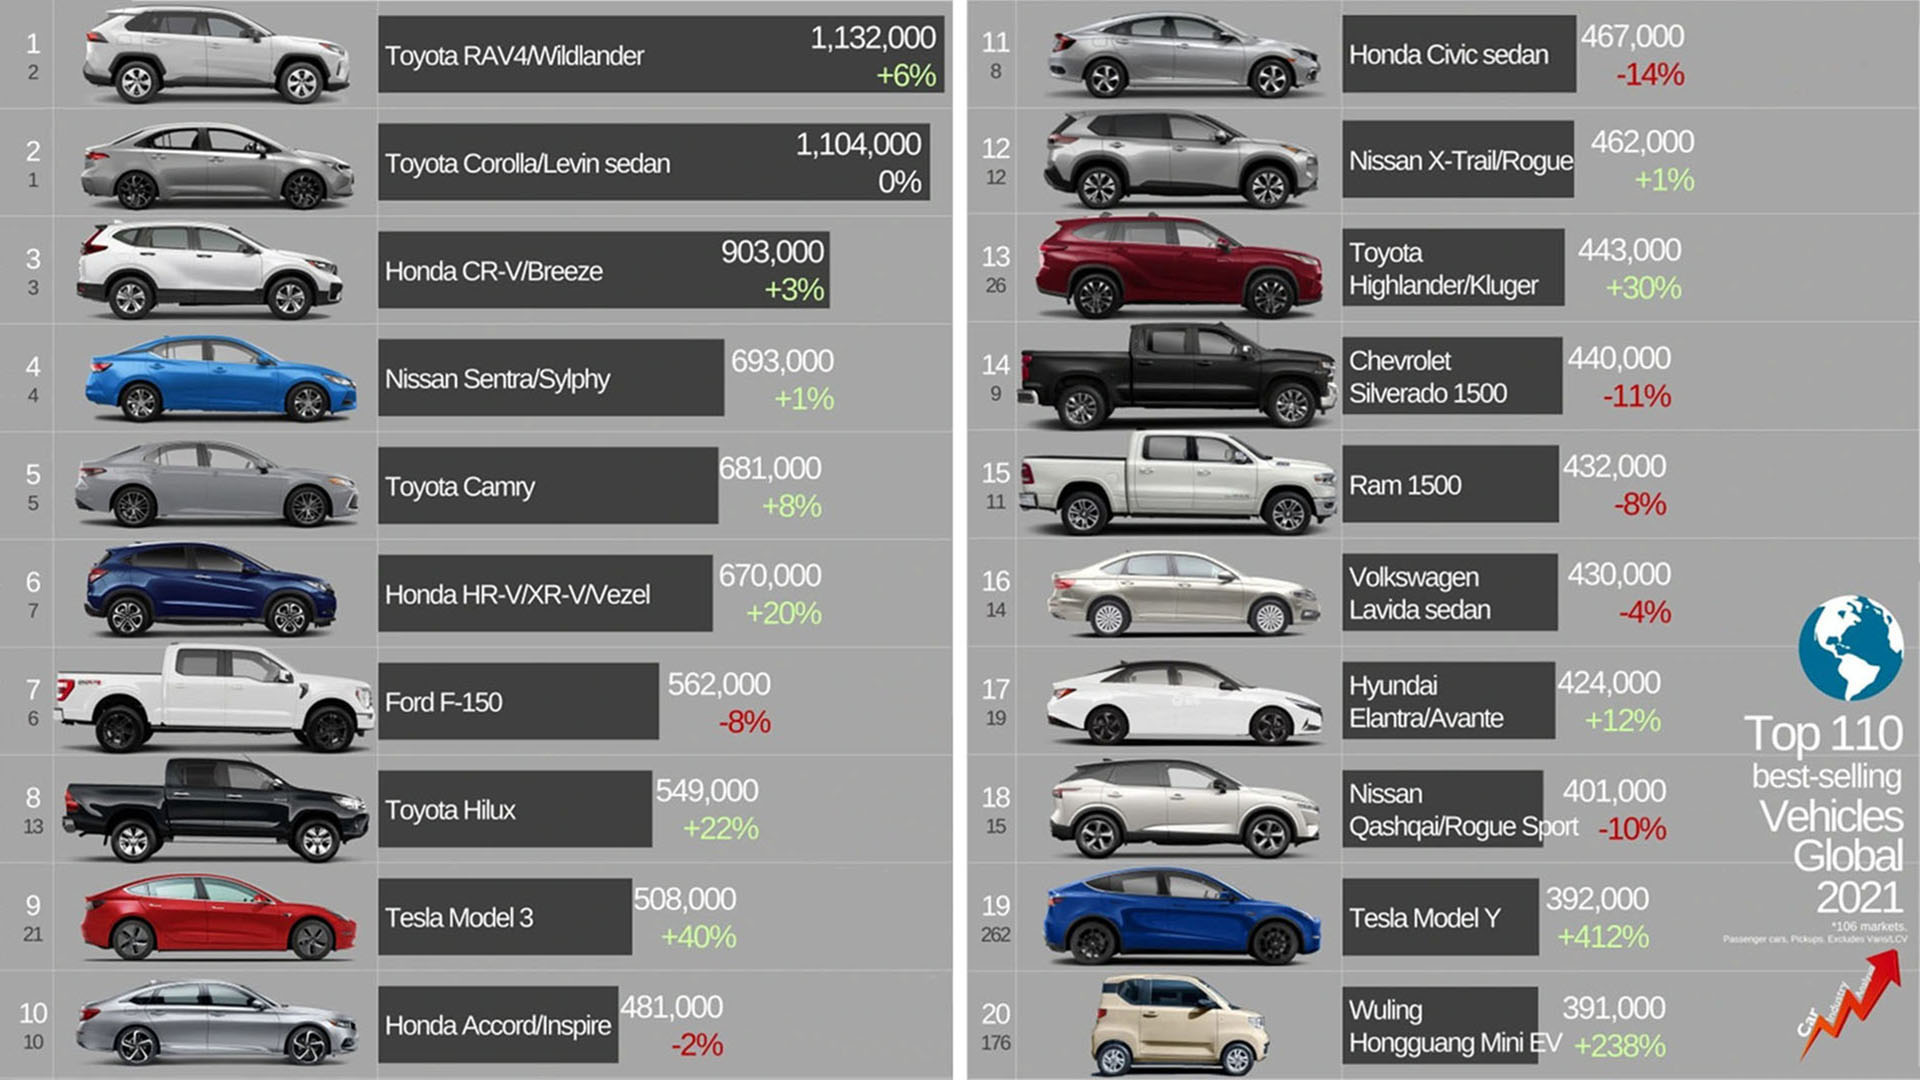 Listen nådde 110 solgte biler i 106 land, en studie publisert av JATO Dynamics